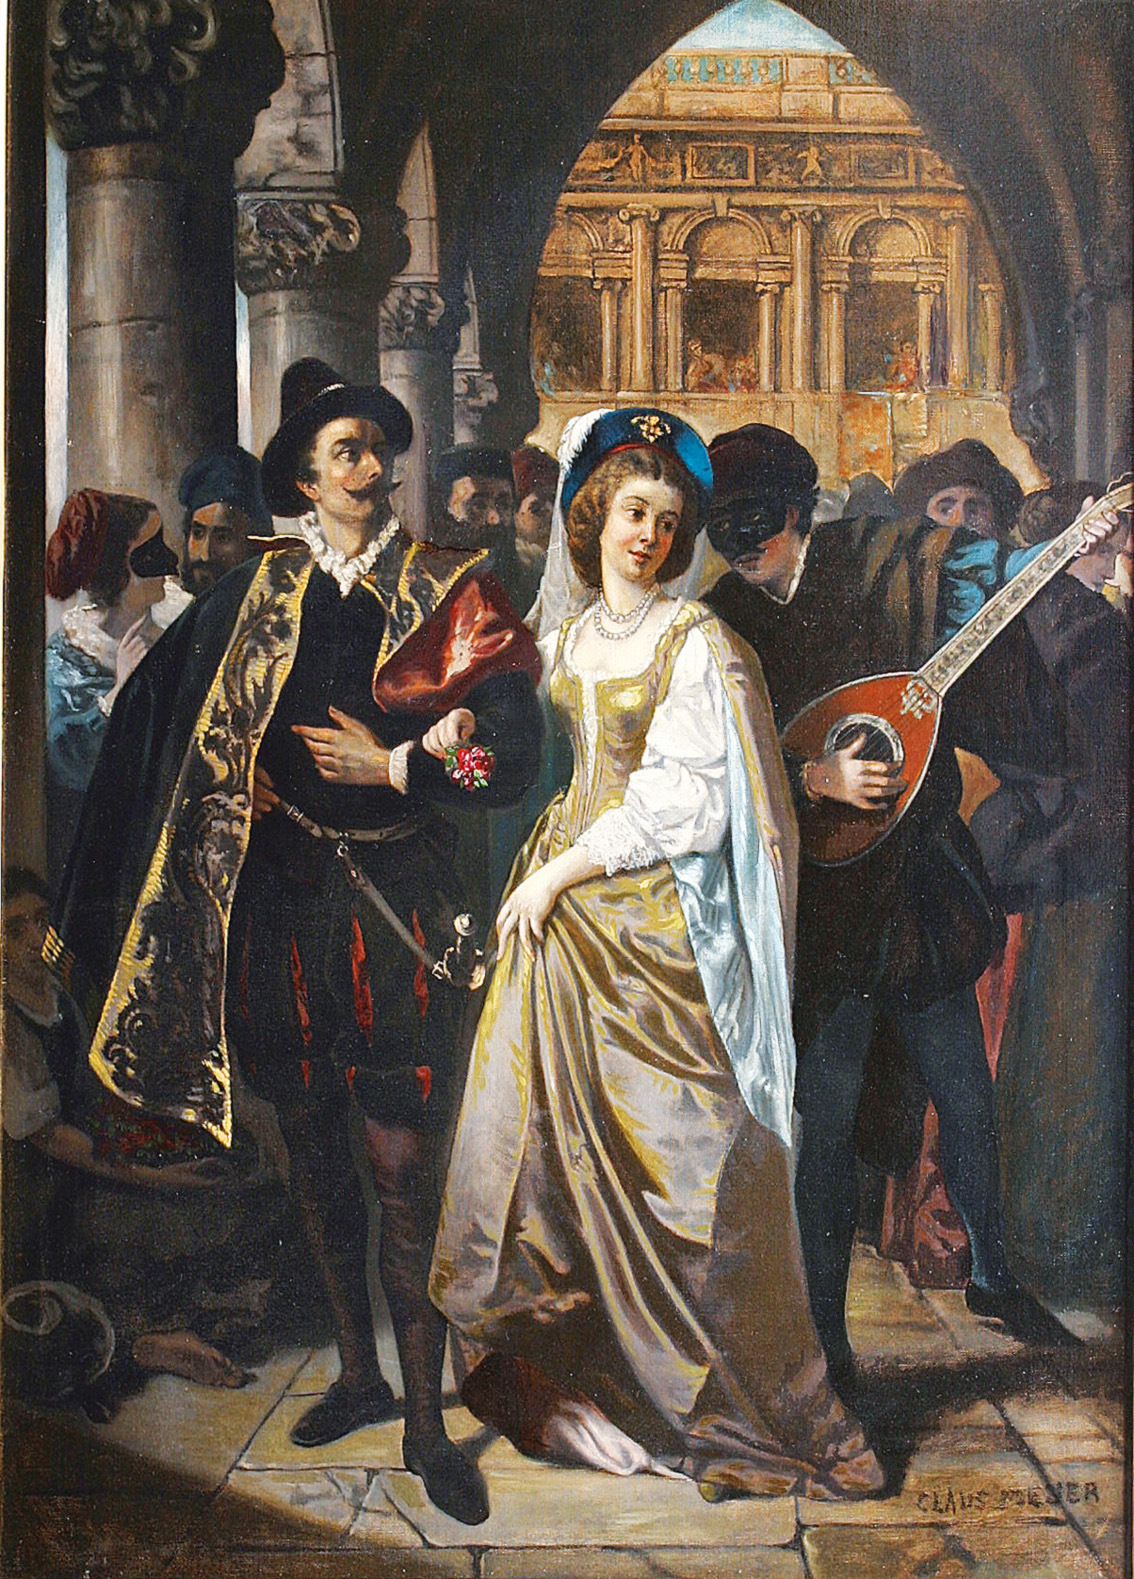 A Renaissance couple at a ball